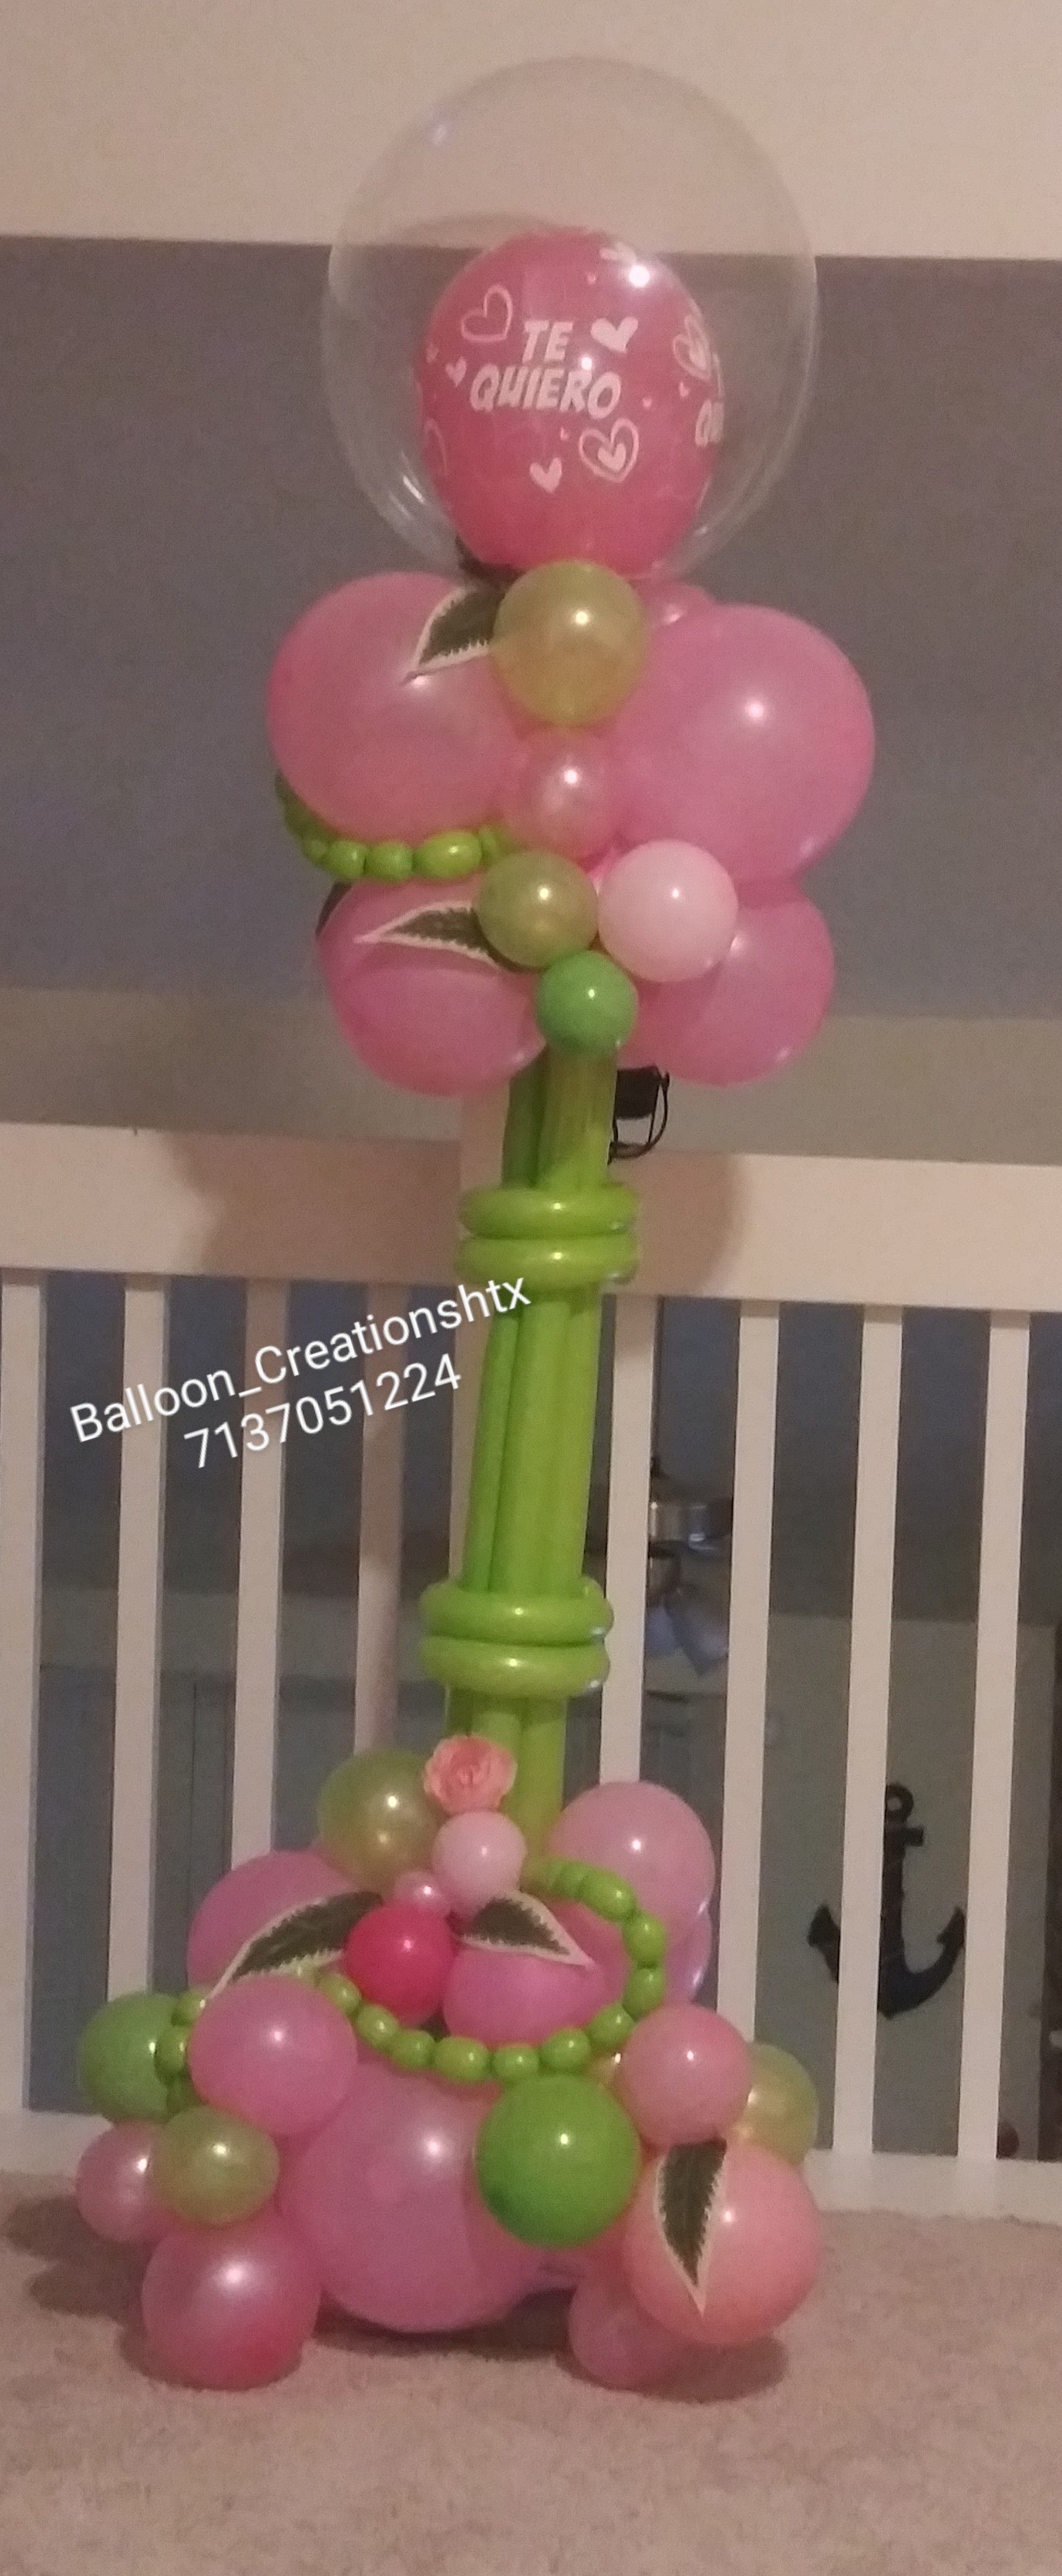 Balloon gift / balloon column. 6ft tall. Areglo de globos